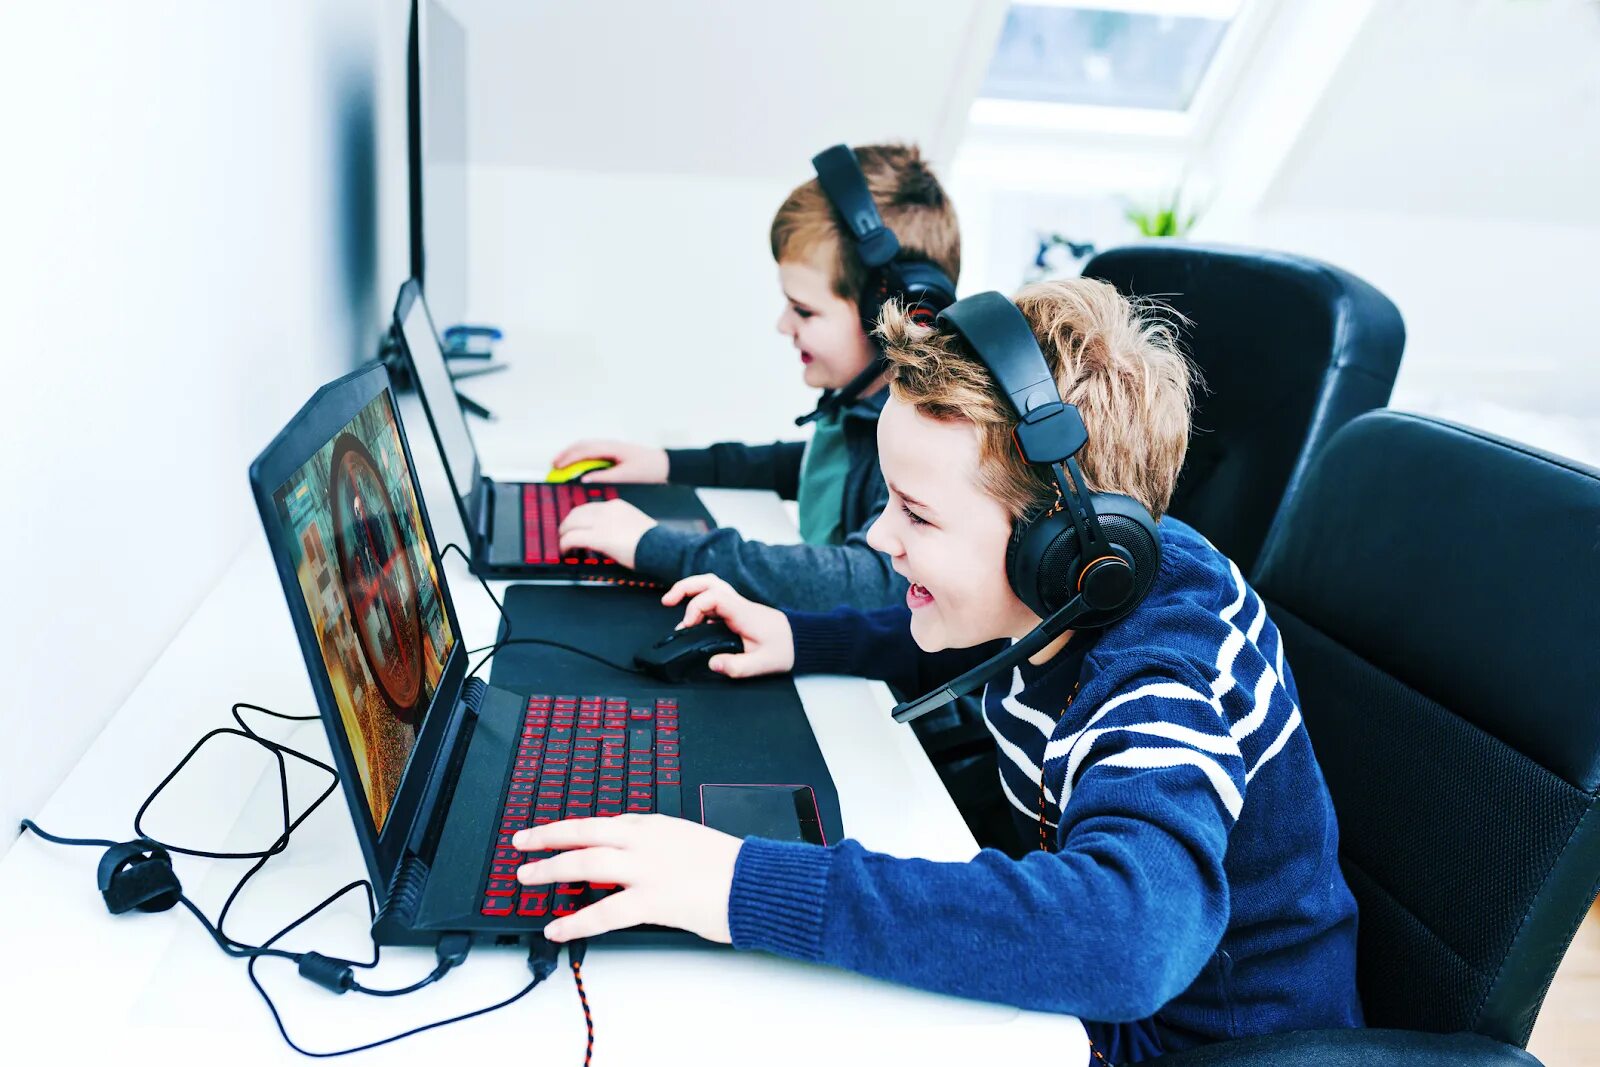 They a computer game to play. Игровая зависимость. Ребенок за компьютером. Дети играющие в комп. Подросток играющий в компьютер.